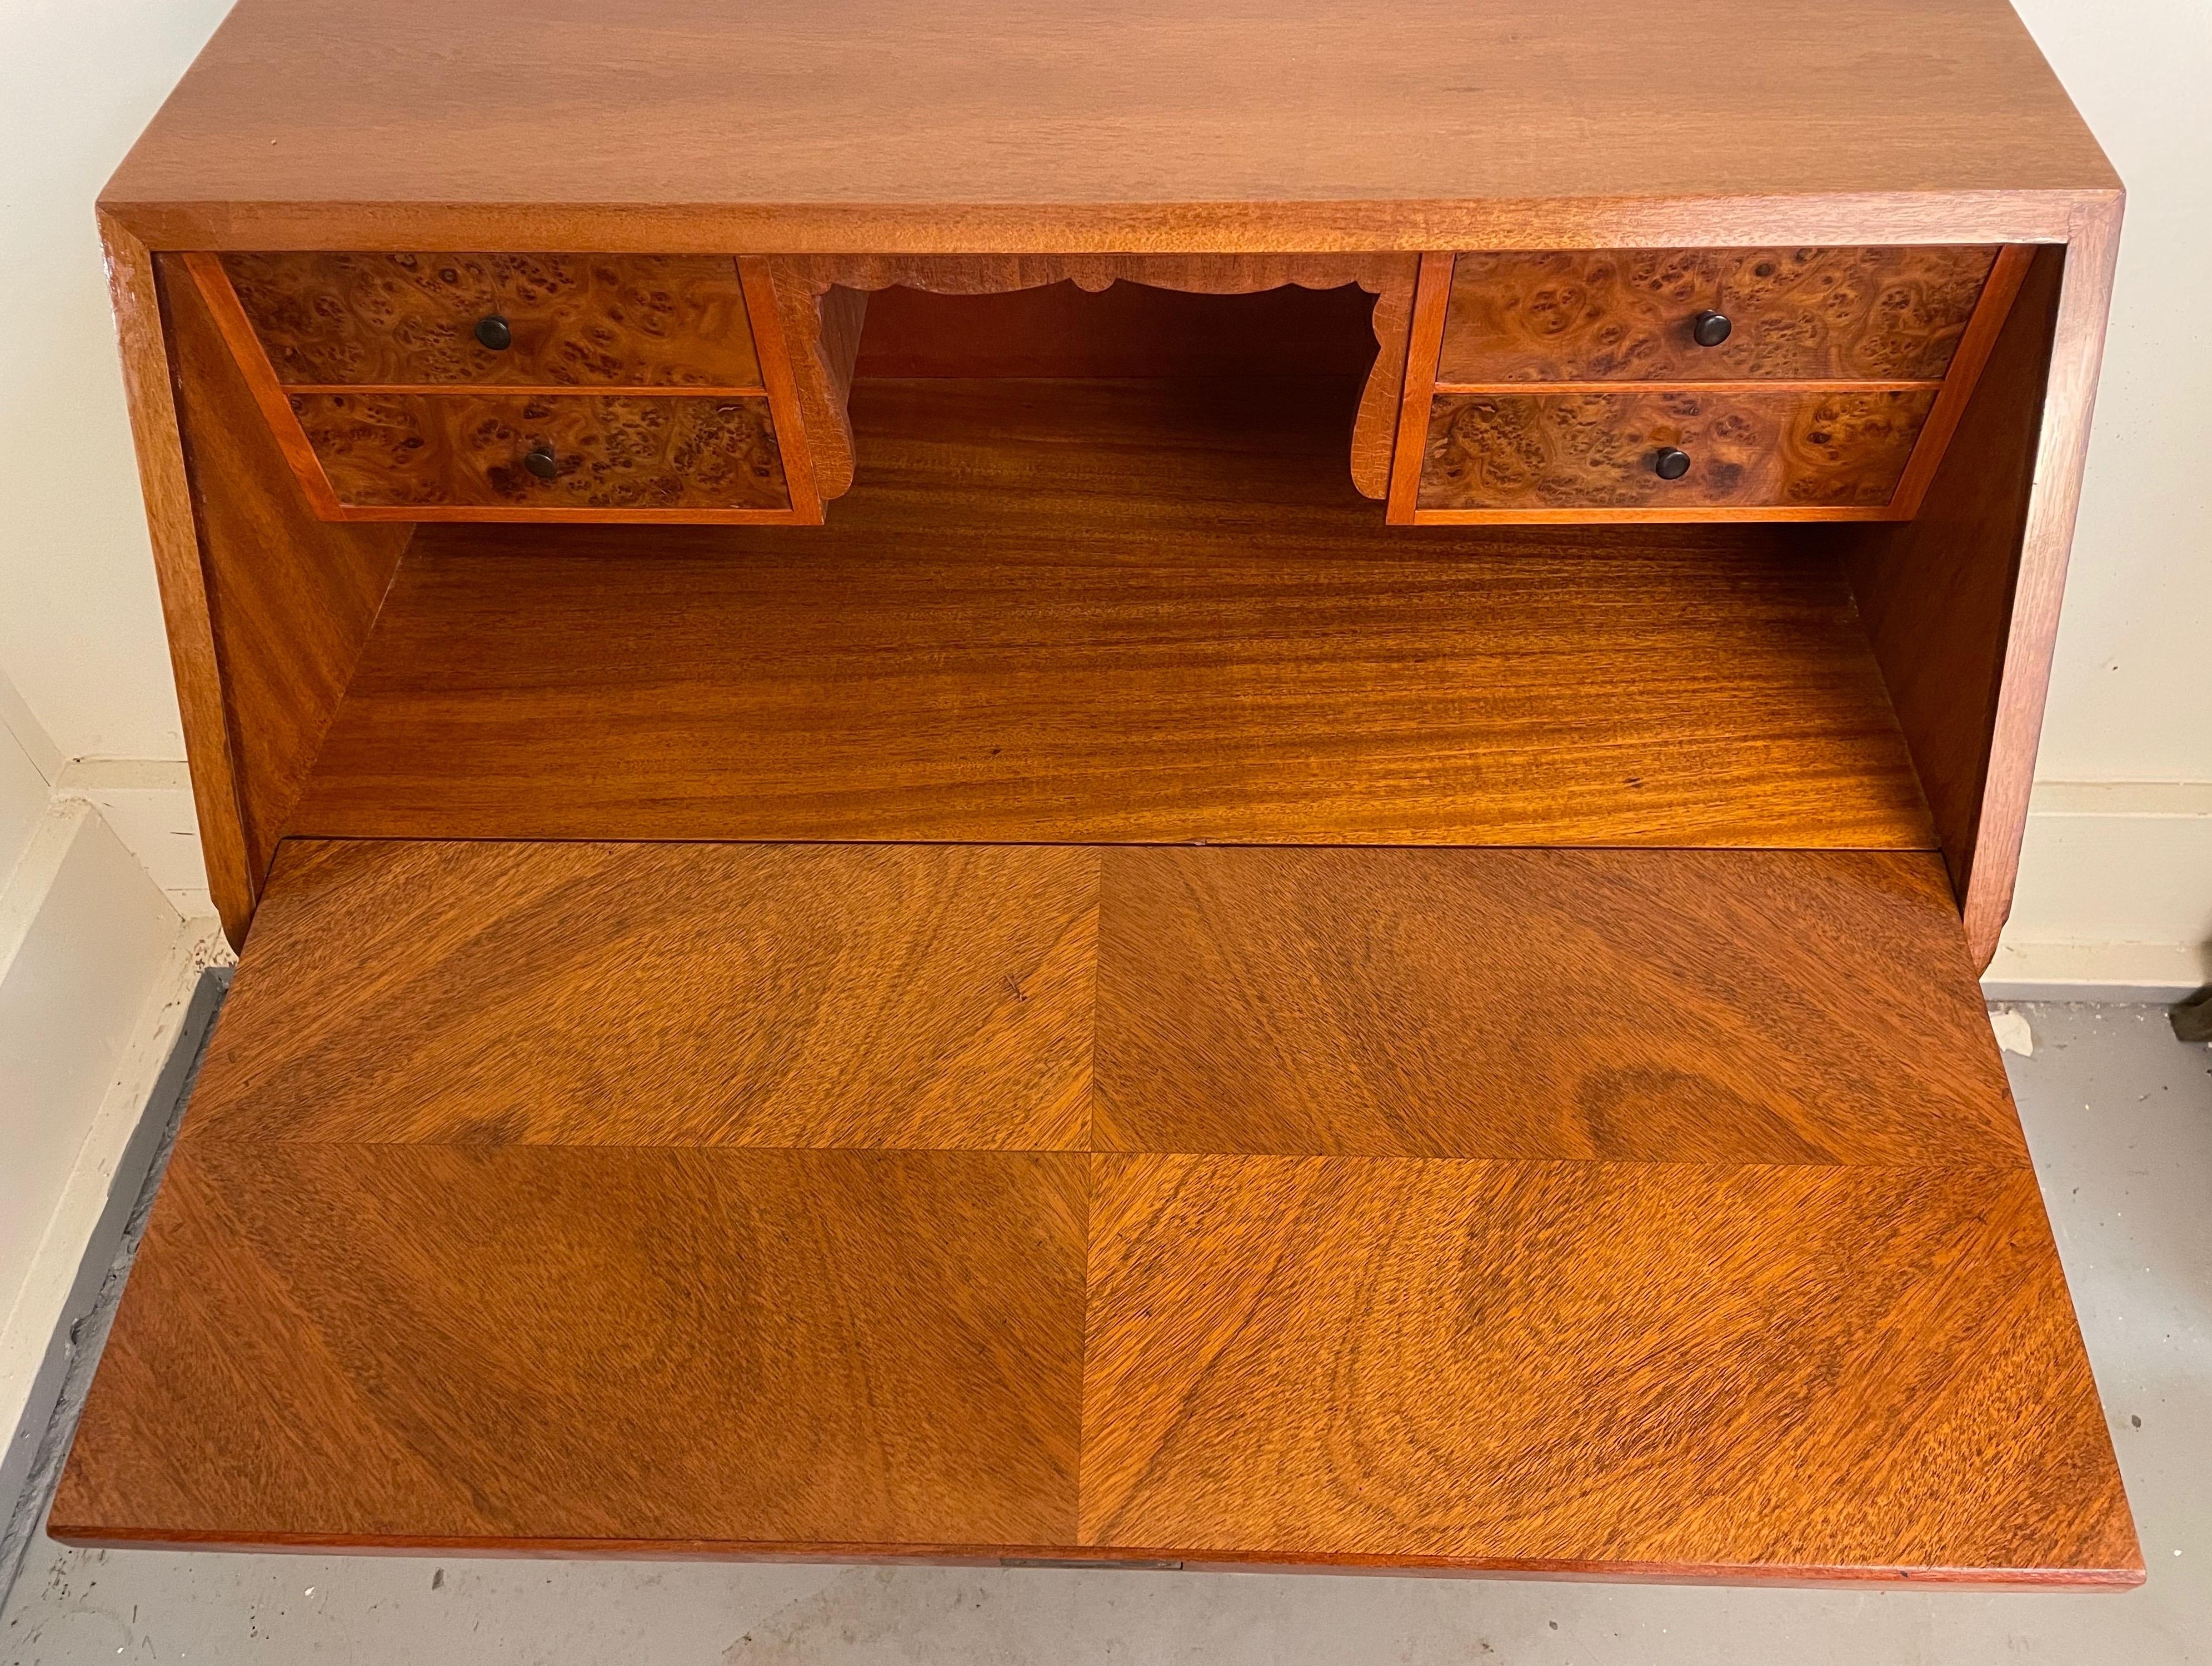 Ein praktischer Schreibtisch, der keine ästhetischen Kompromisse eingeht. Das schöne Mahagoni-Furnier in Buchform ziert sowohl die Innen- als auch die Außenseite des Gehäuses. Die Schubladen im Inneren sind mit genopptem Mahagonifurnier und